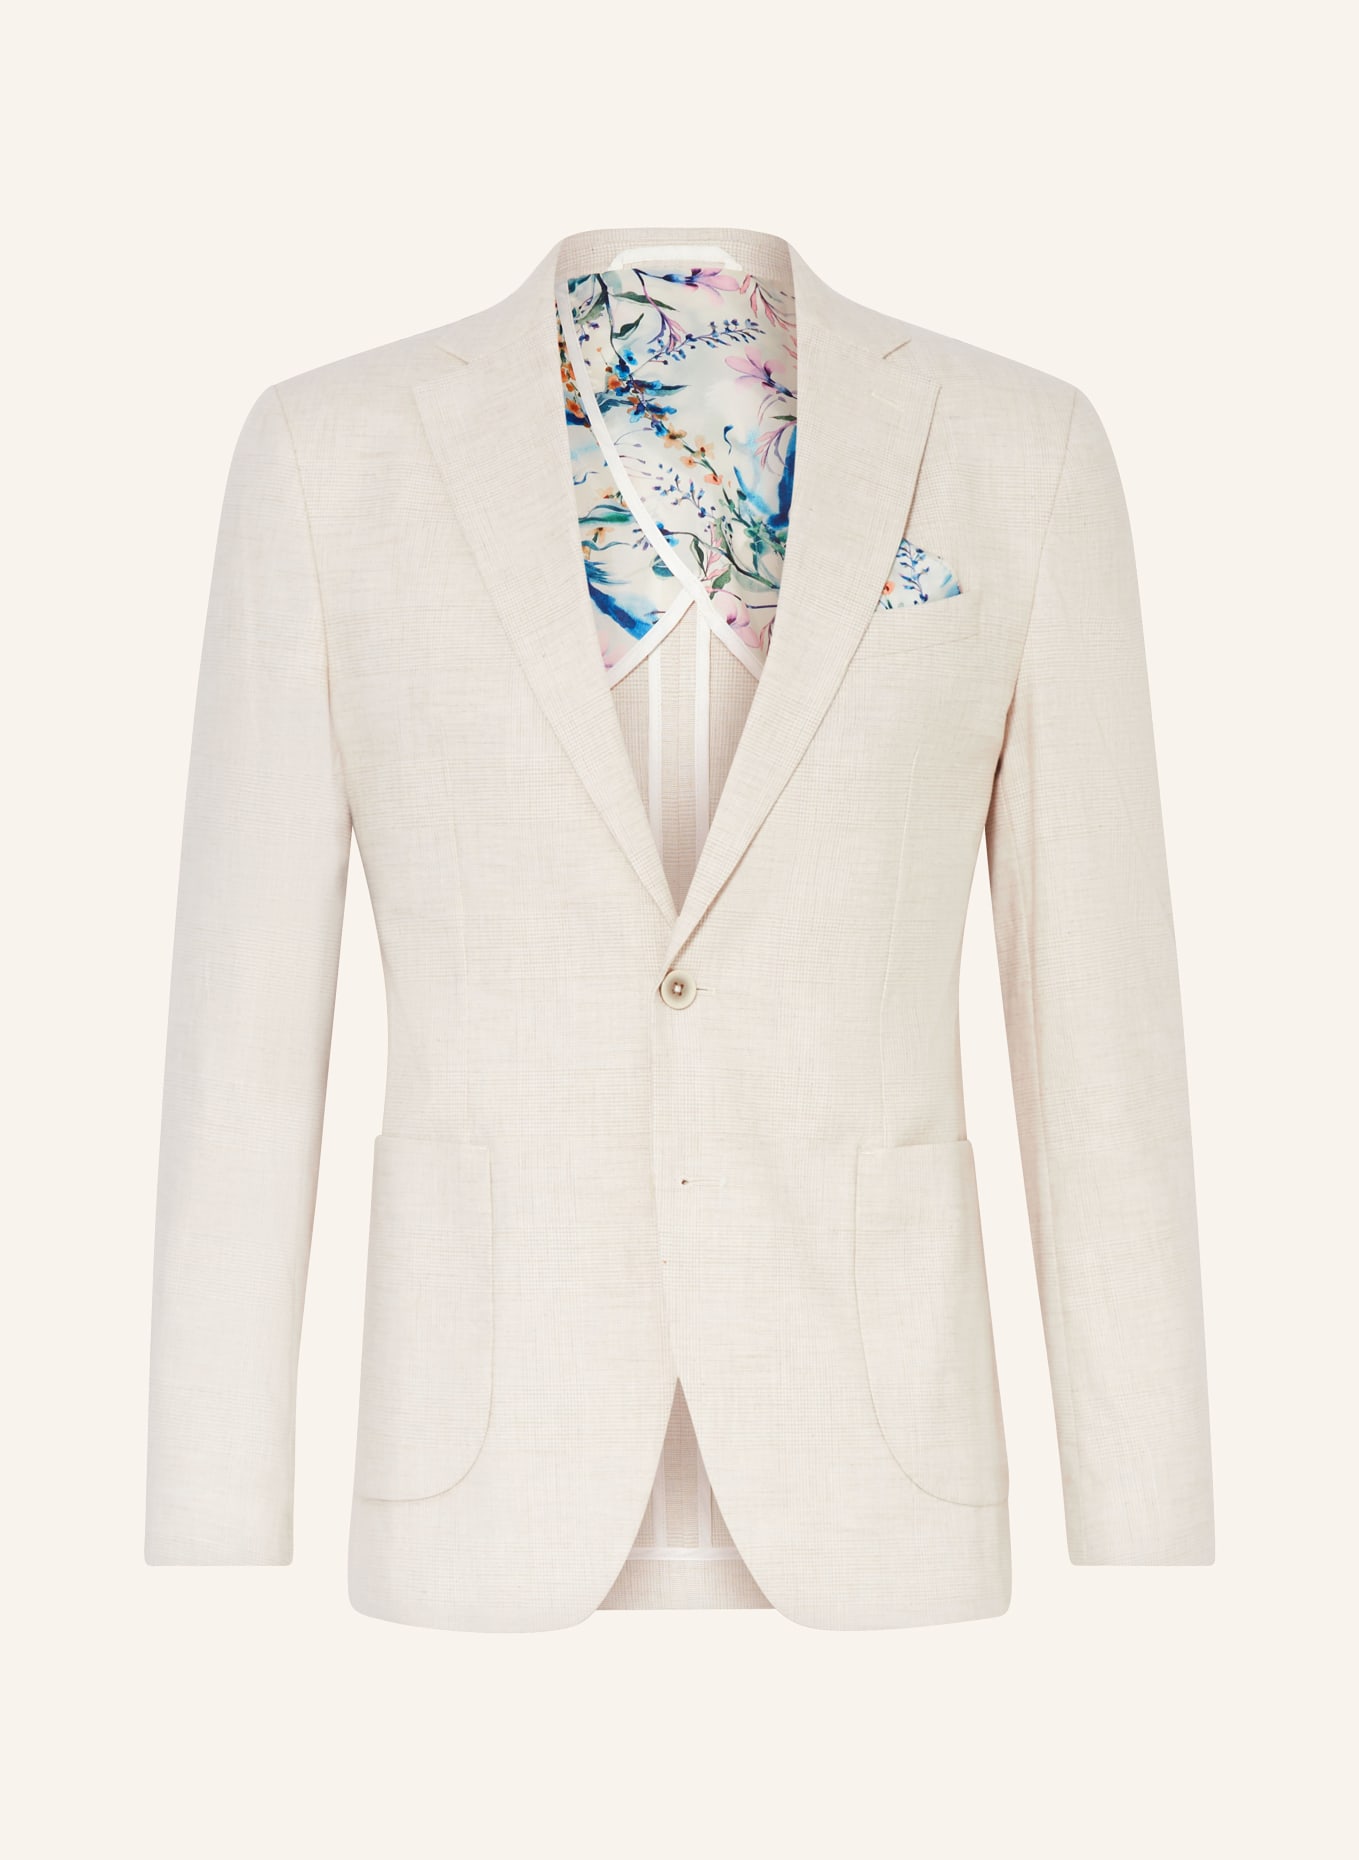 PAUL Suit jacket Slim Fit, Color: 210 Light Beige Check (Image 1)